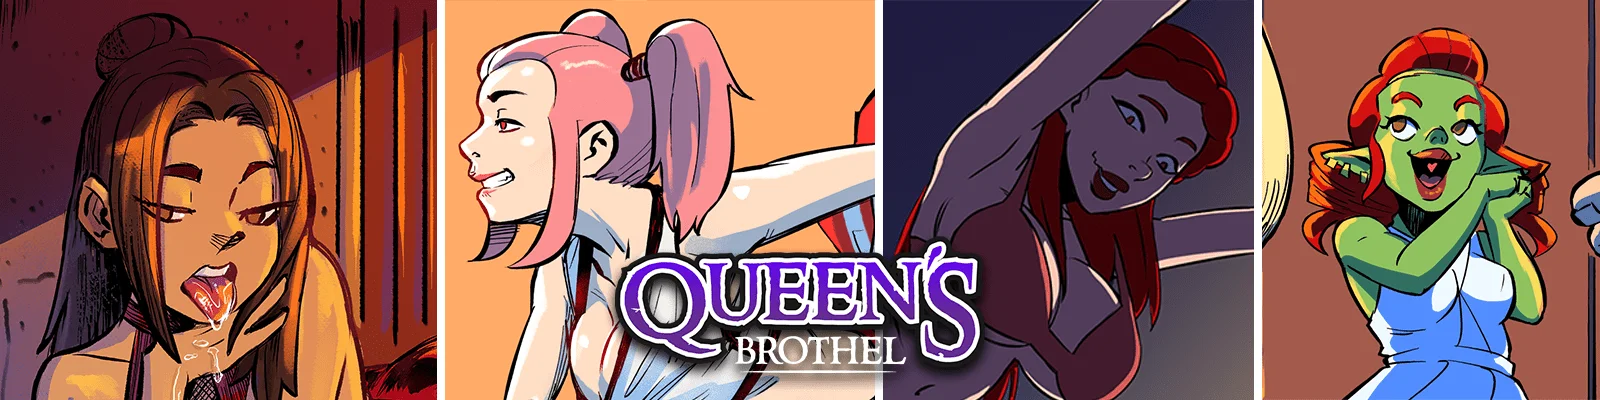 Queen's Brothel v.1.7.0